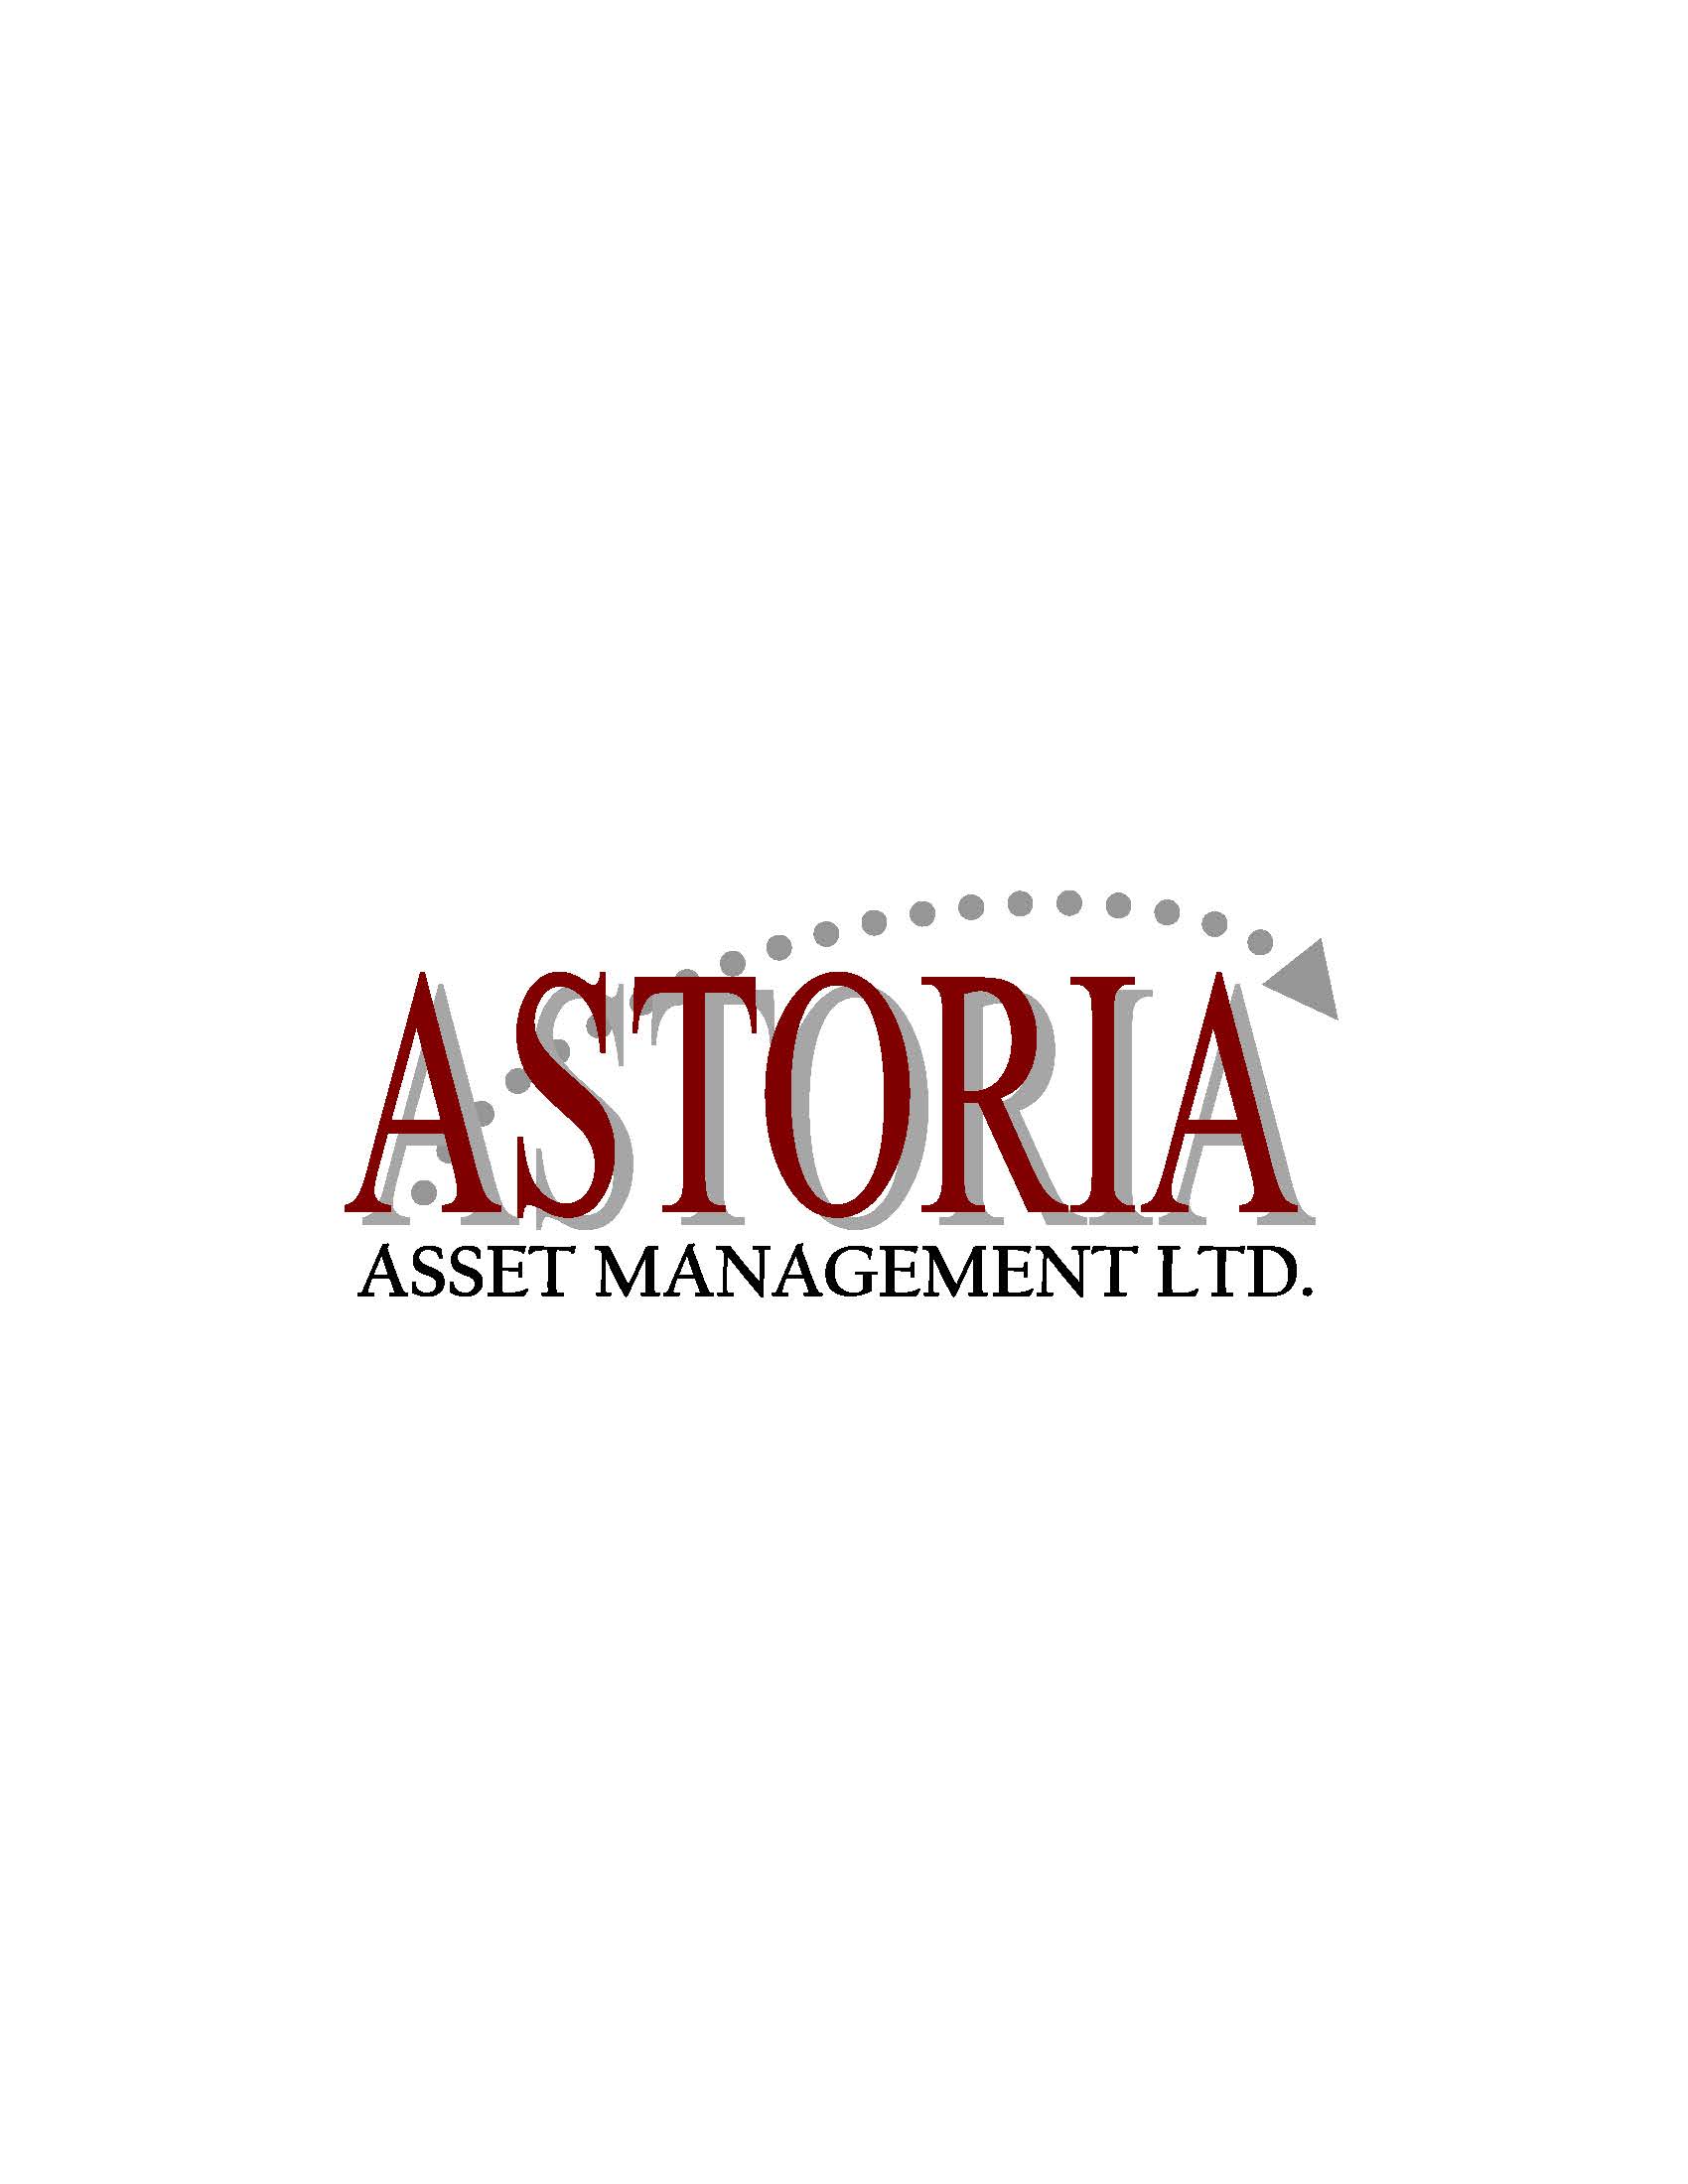 Astoria Asset Management Ltd.